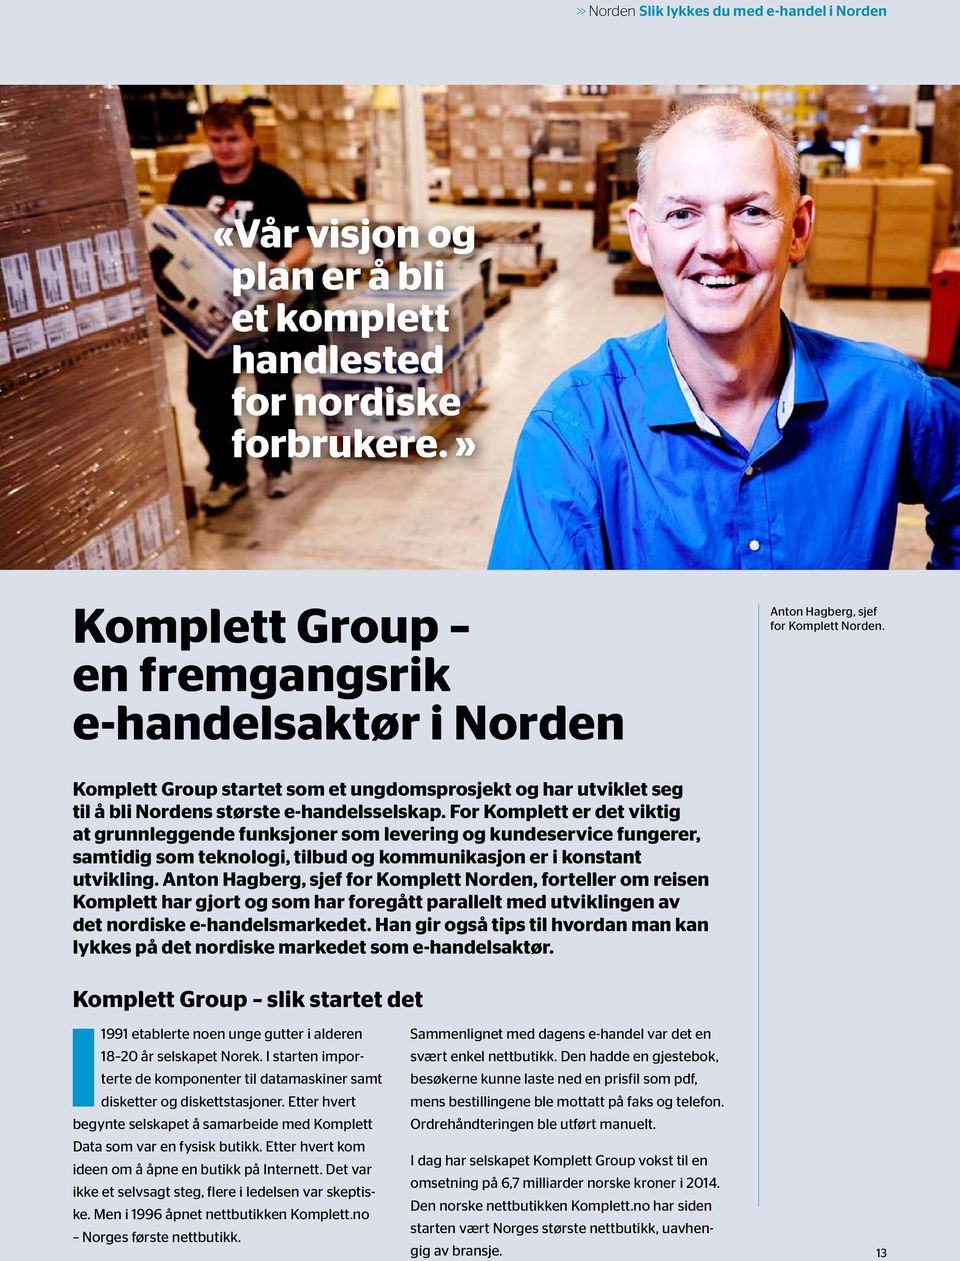 Komplett Group startet som et ungdomsprosjekt og har utviklet seg til å bli Nordens største e-handelsselskap.